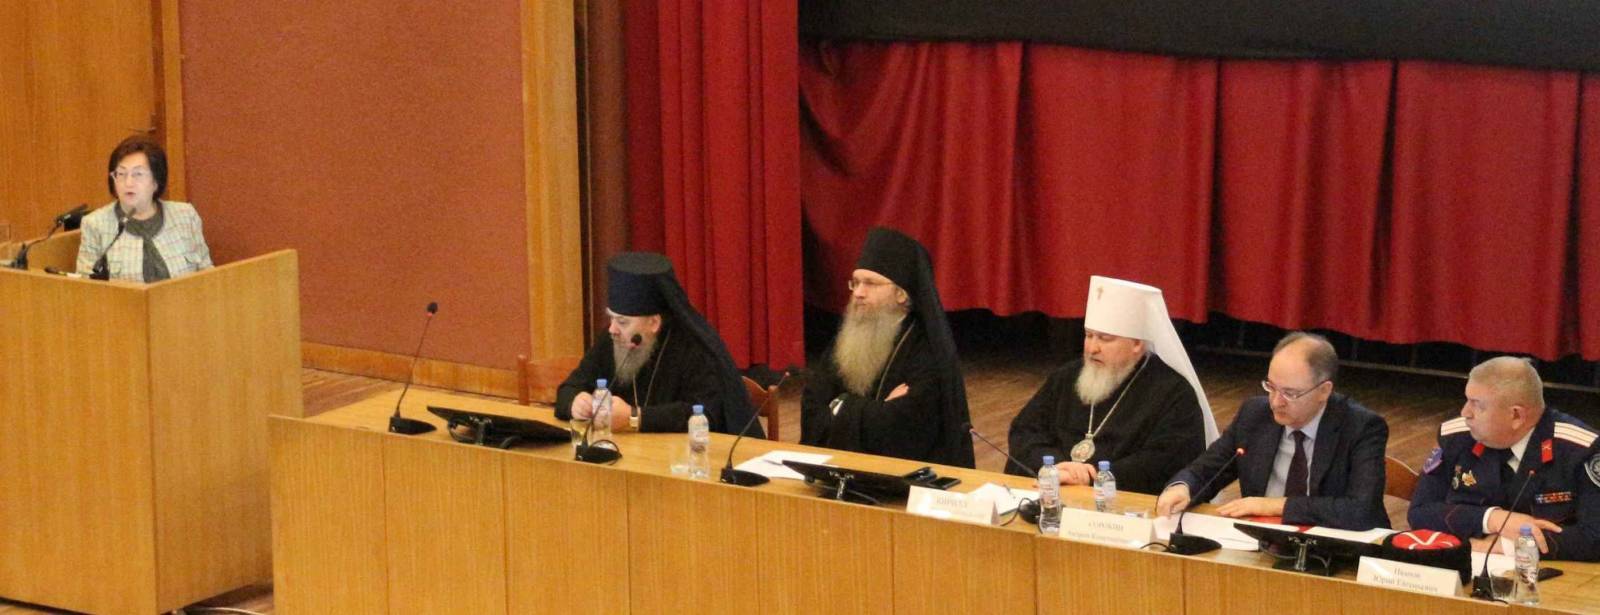 Владыка Елисей принял участие в научной конференции по Казачеству.